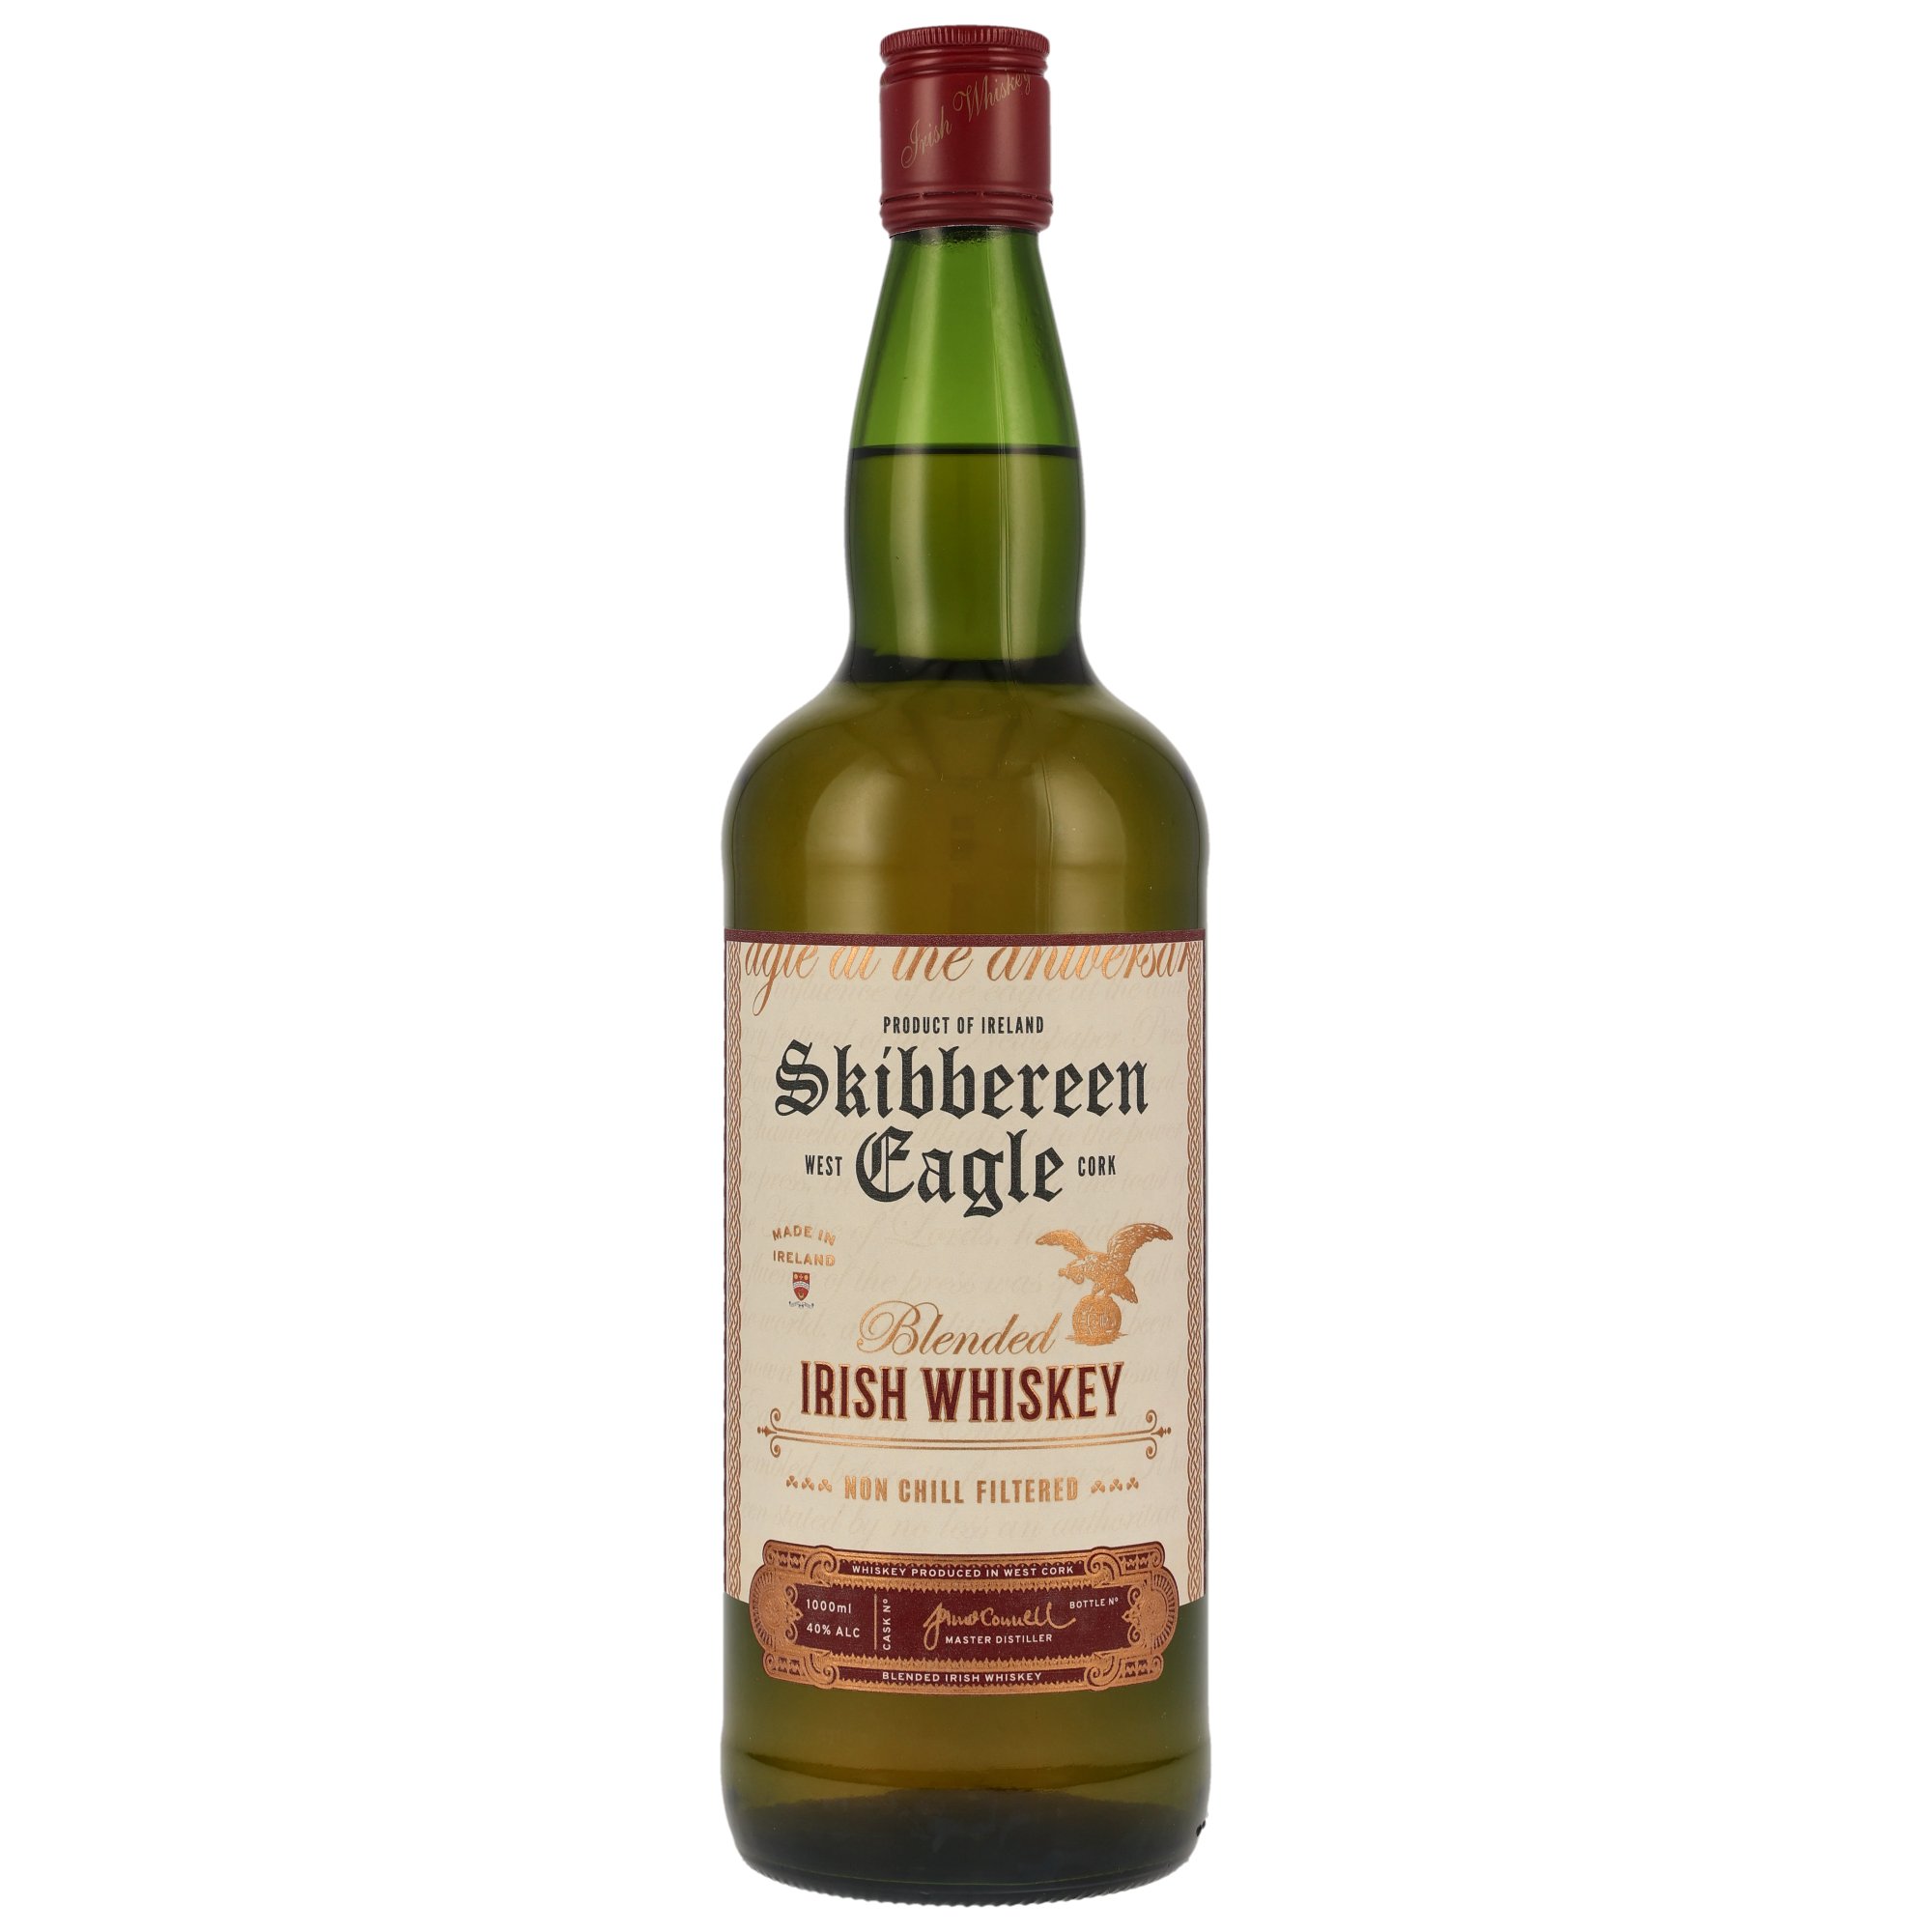 Skibbereen Eagle Blended Irish Whiskey 40.0% 1 Liter